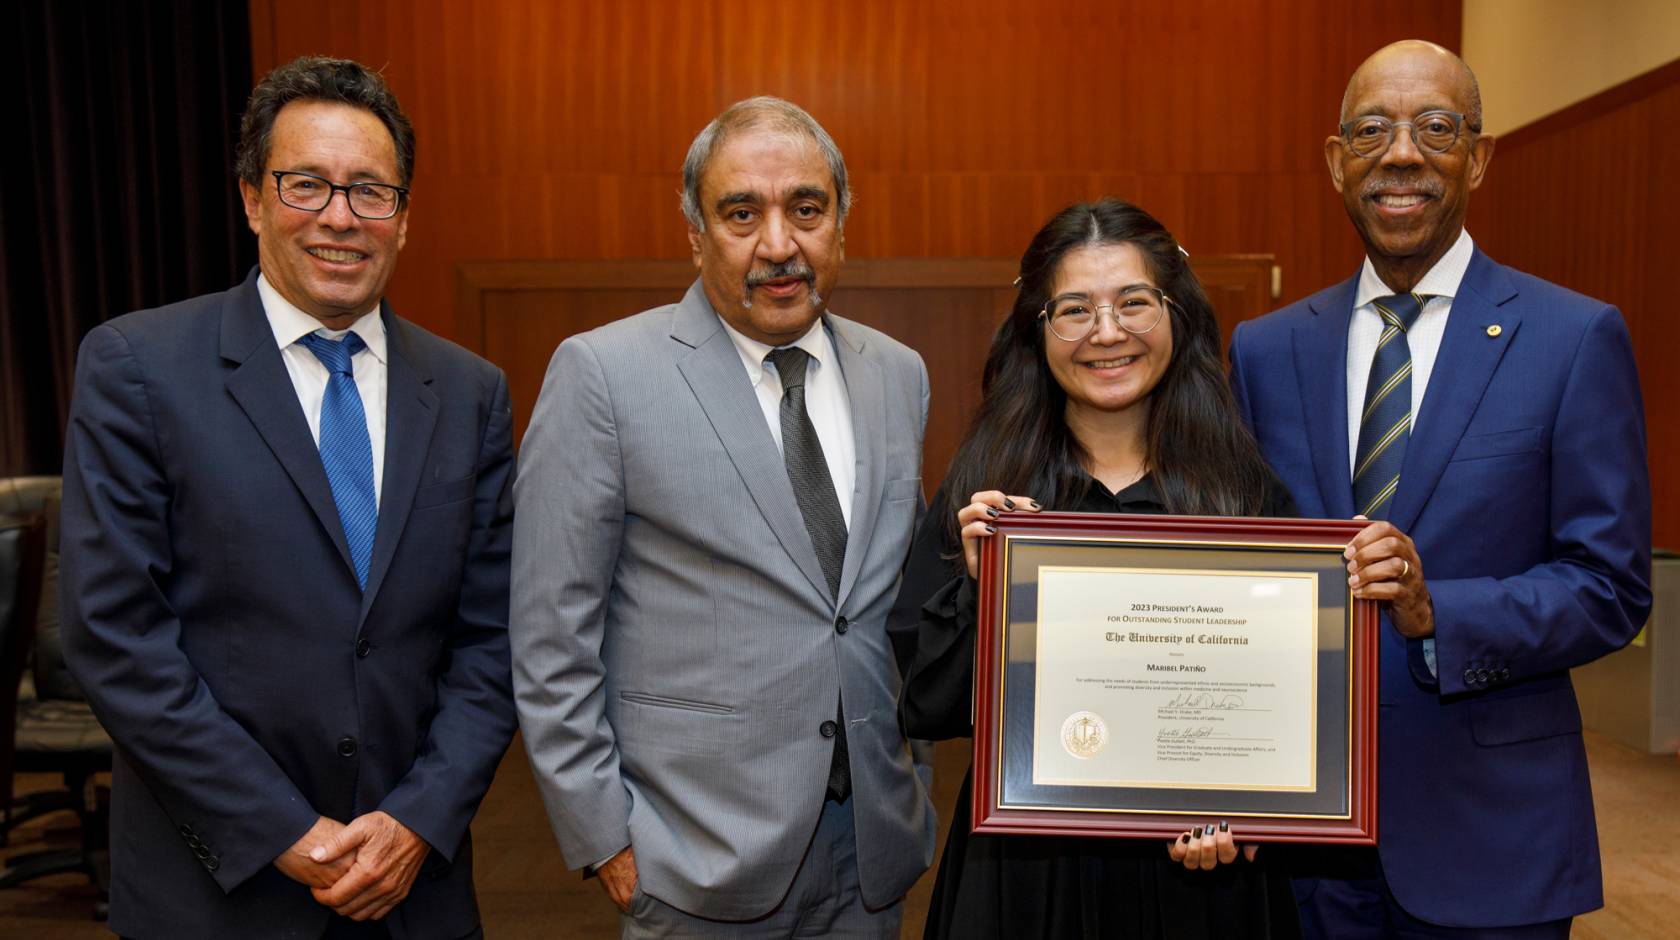 Chair Richard Leib, Chancellor Khosla, a young Latina woman Maribel Patiño, and President Drake 